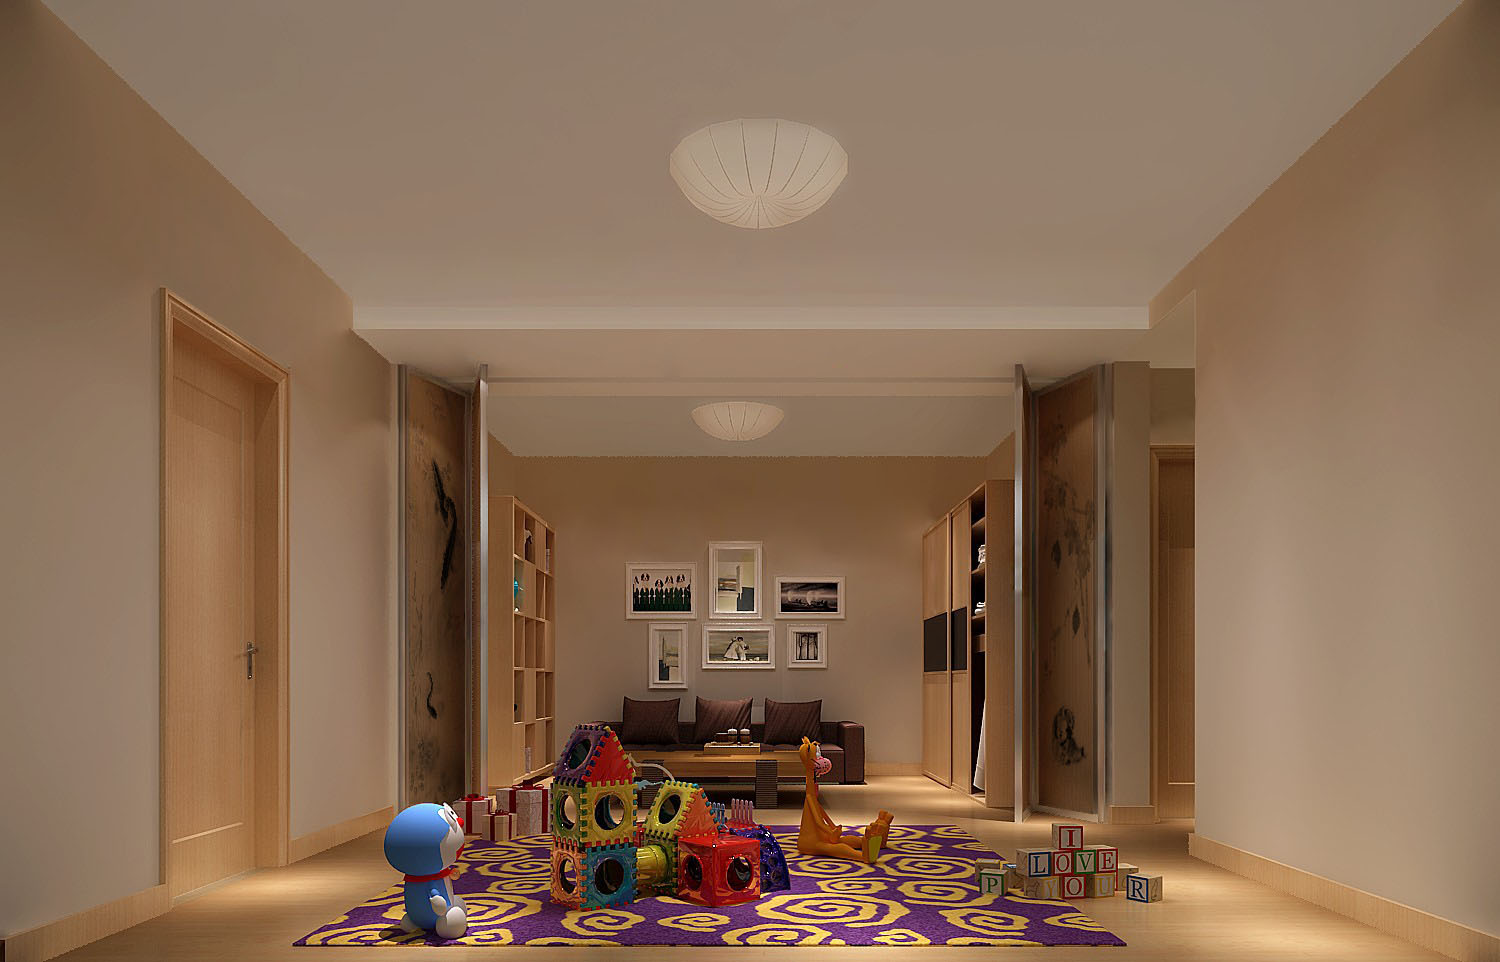 复式公寓 白领 小资 复古 简约 欧式 别墅 客厅图片来自重庆高度国际装饰工程有限公司在中铁花语城-简欧的分享